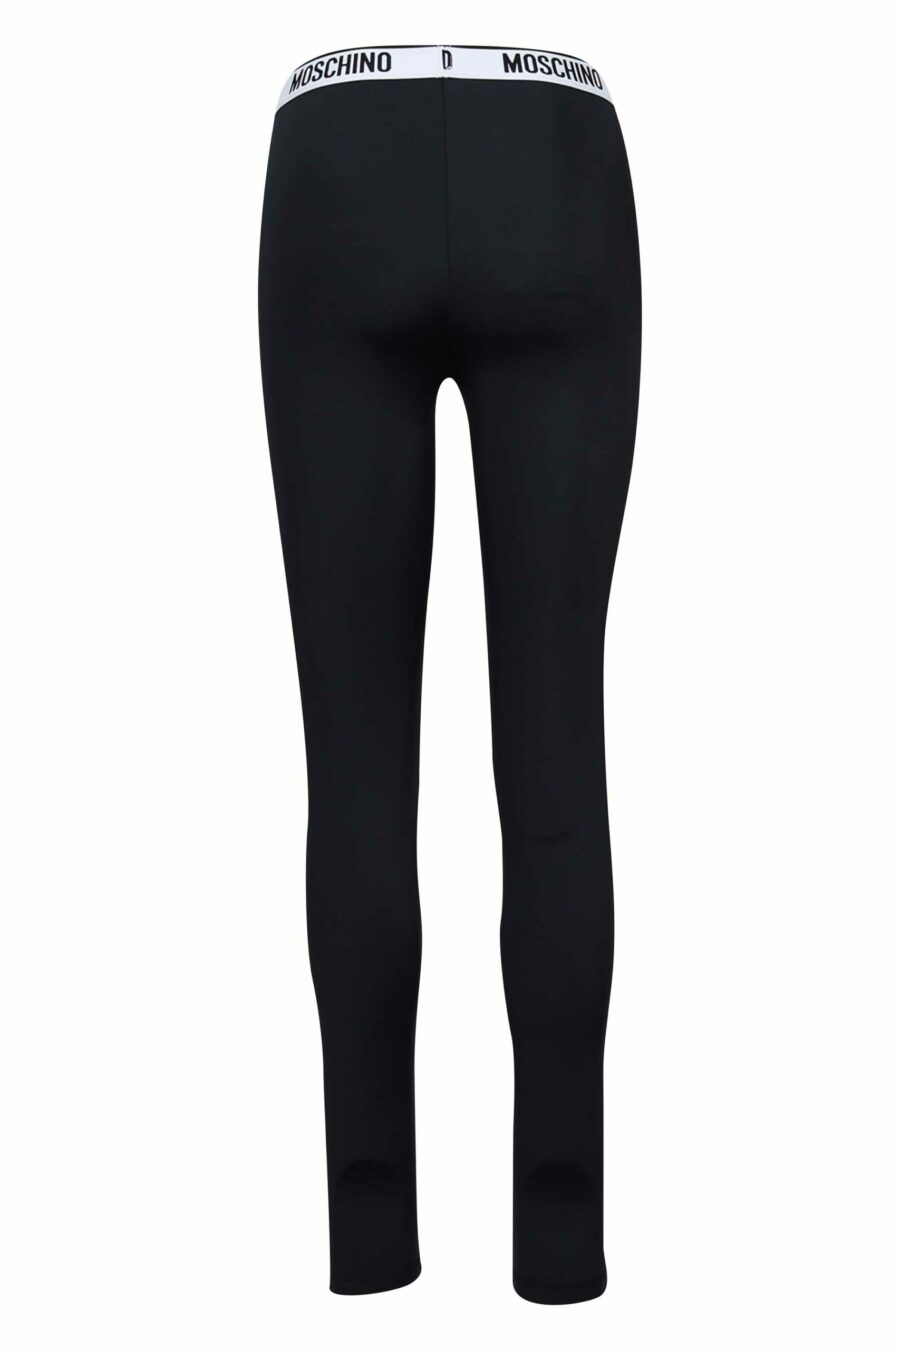 Black leggings with ribbon logo on waistband - 667113066738 2 scaled